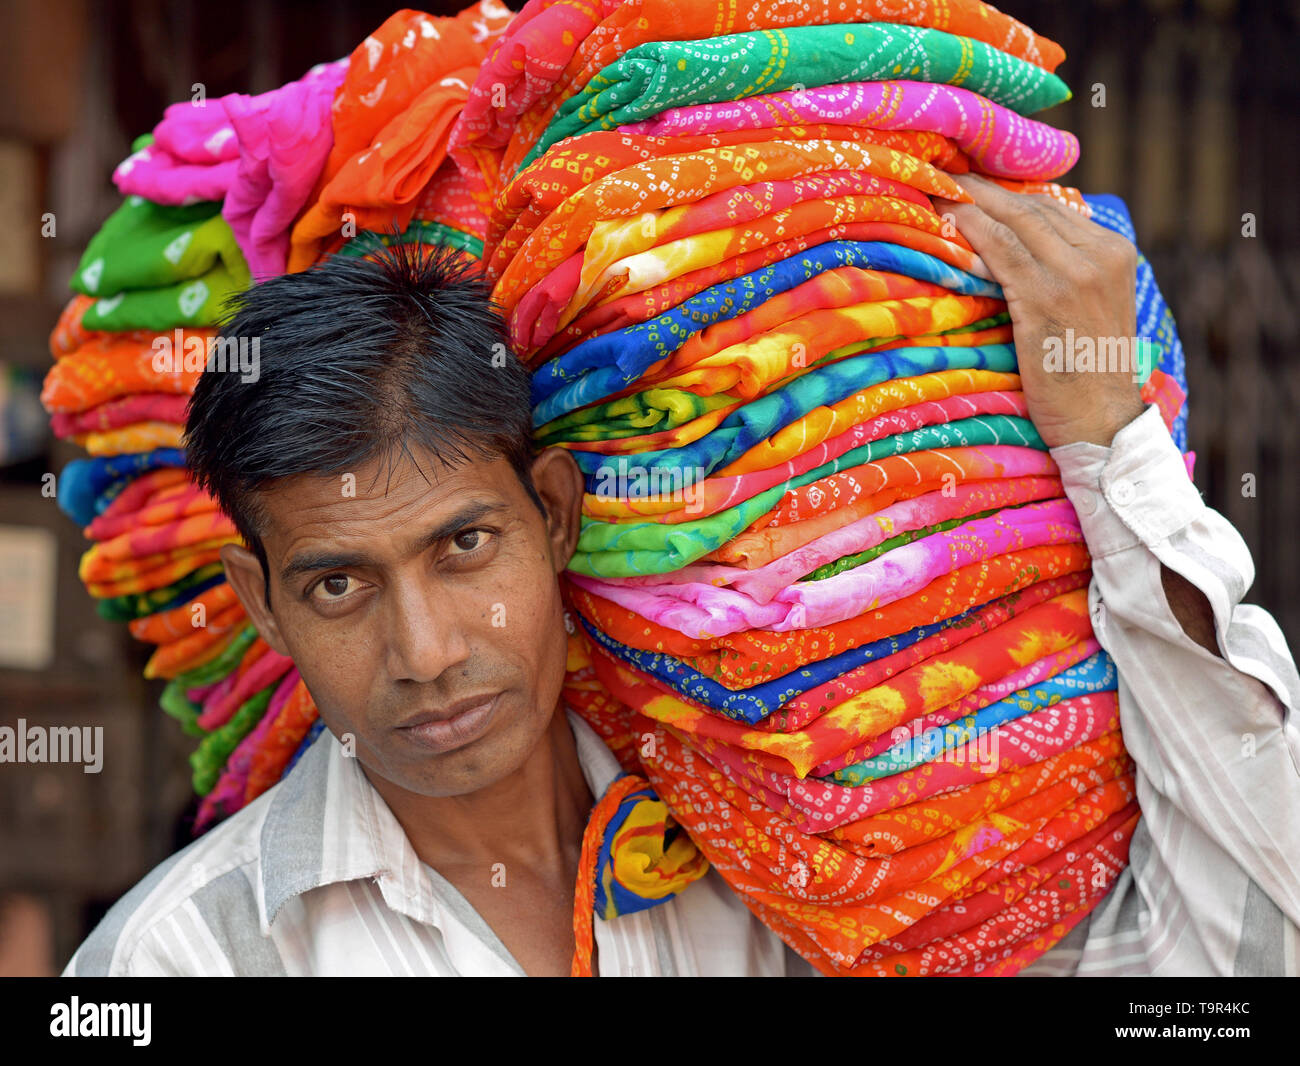 Vendeur indien porte une pile de tissu coloré sur son épaule. Banque D'Images